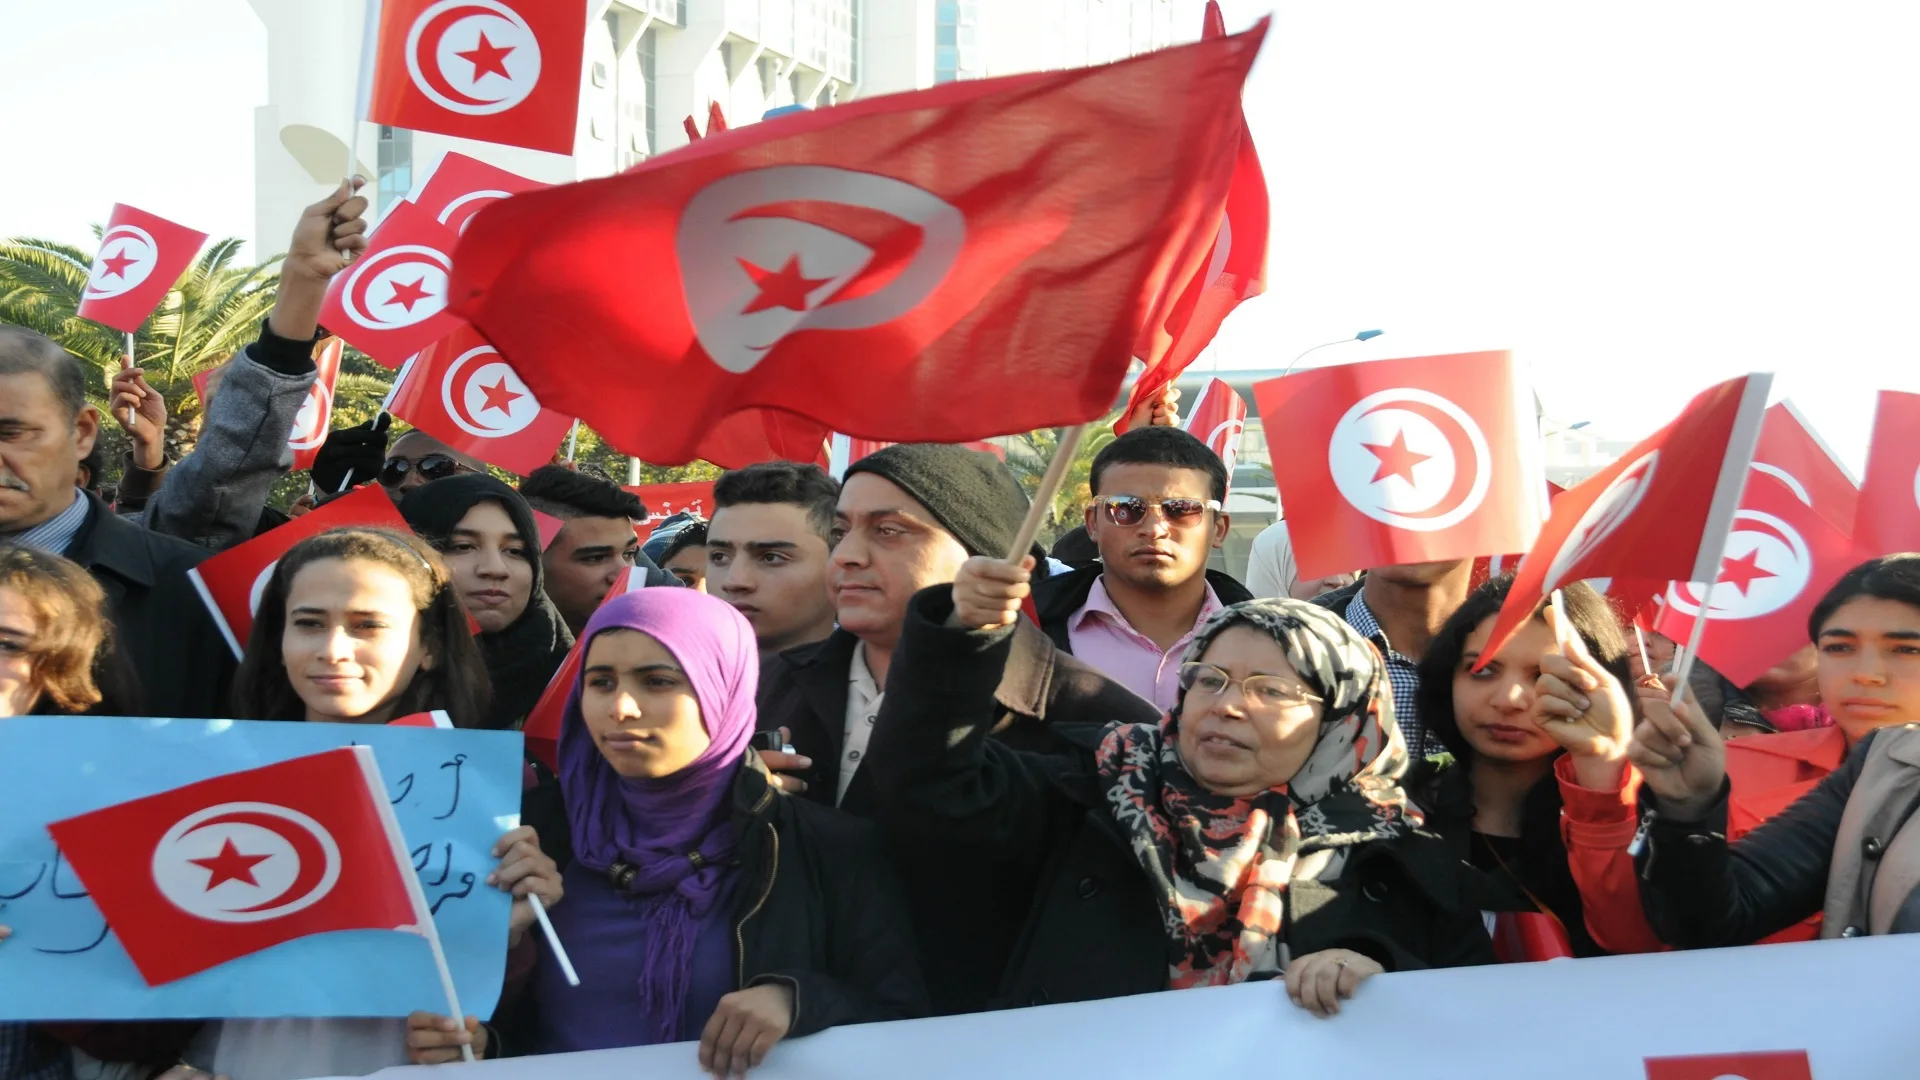 تشهد تونس انفجارًا في عدد الأحزاب السياسية